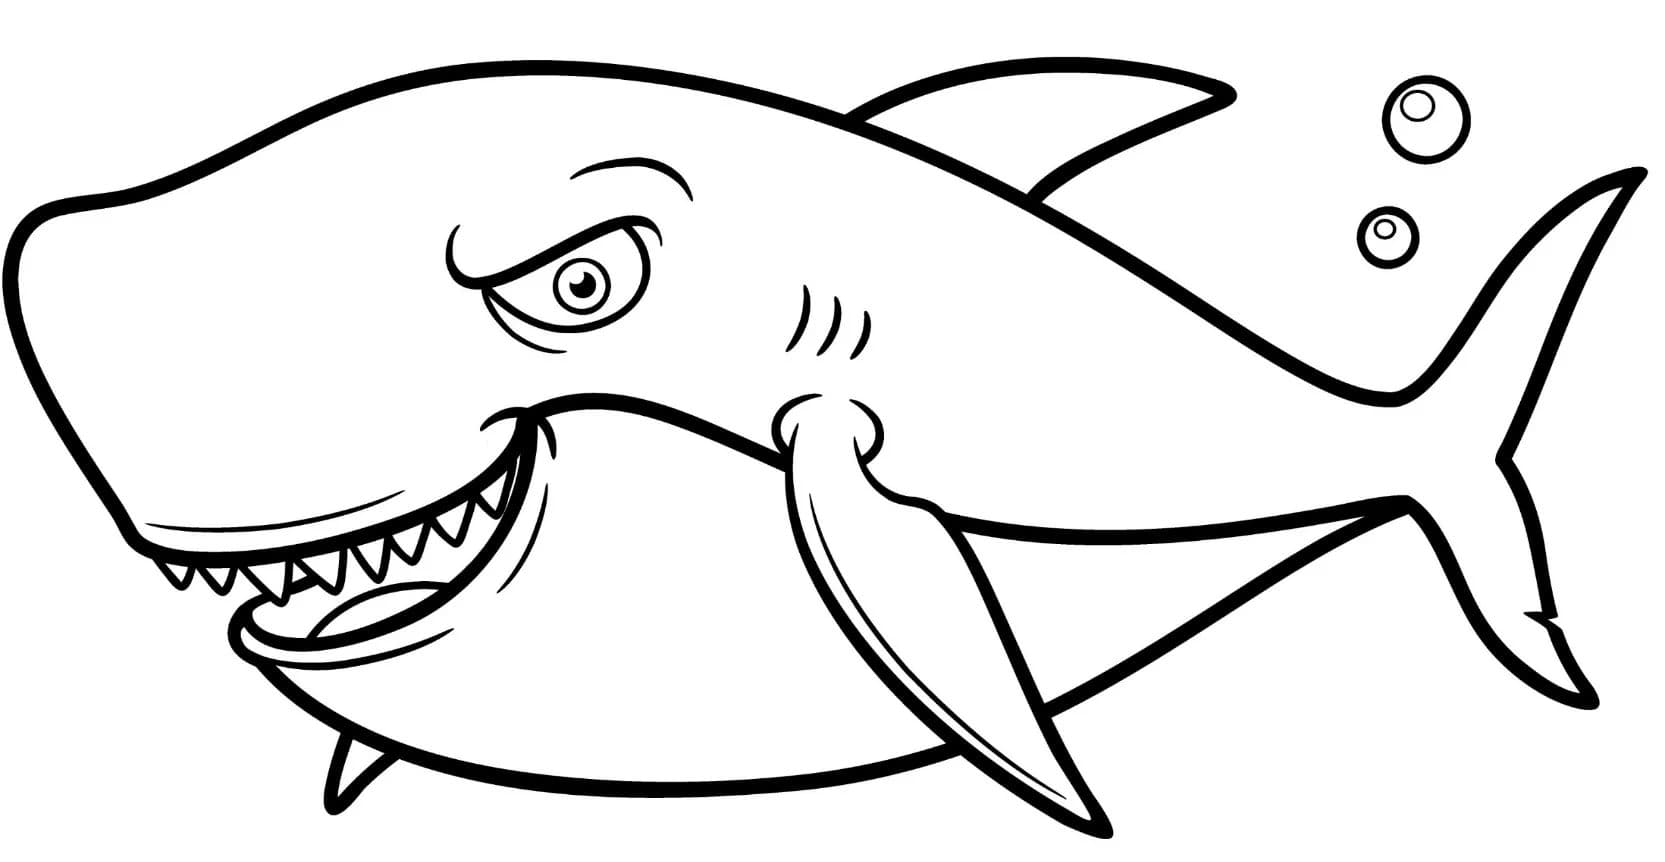 Desenhos do Baby Shark para colorir - 70 imagens para imprimir